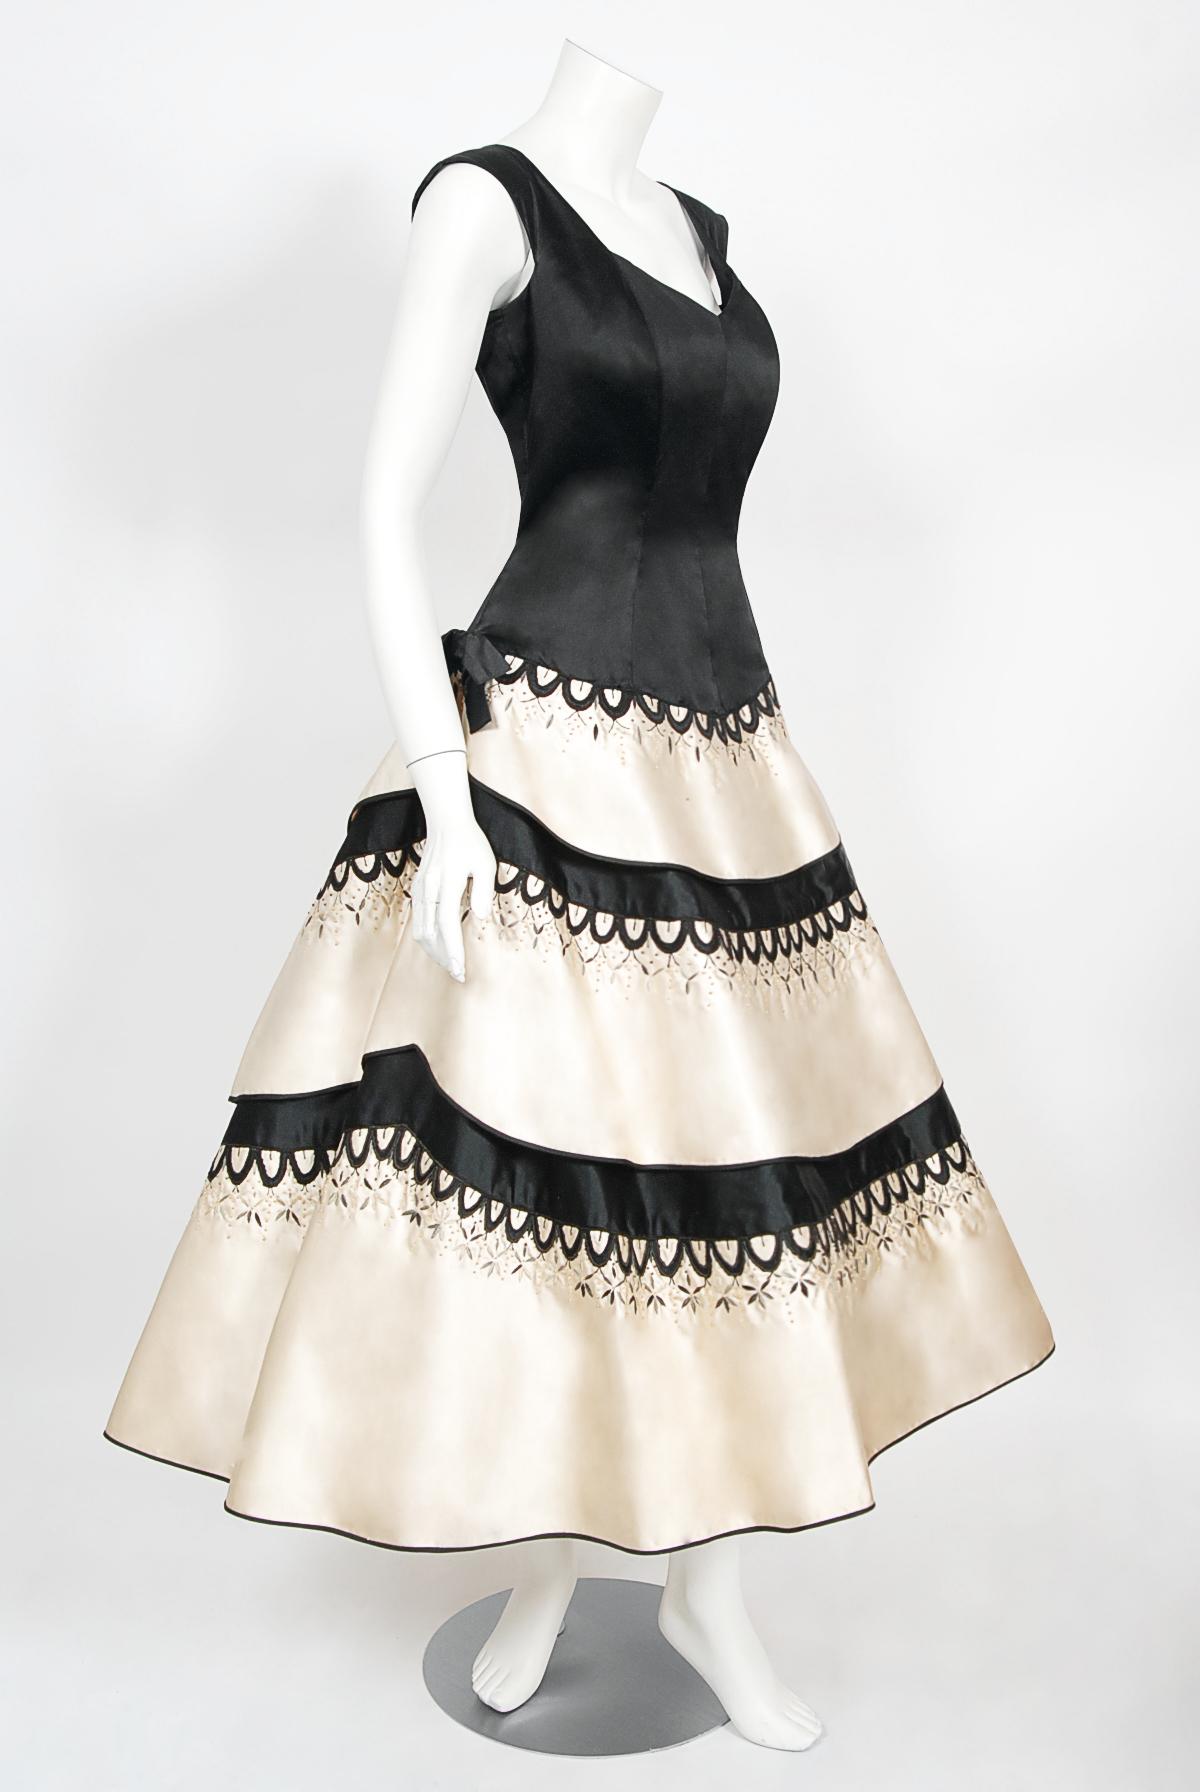 Emilio Schuberth Couture - Robe en satin brodée noire et ivoire, vintage, années 1950 en vente 1